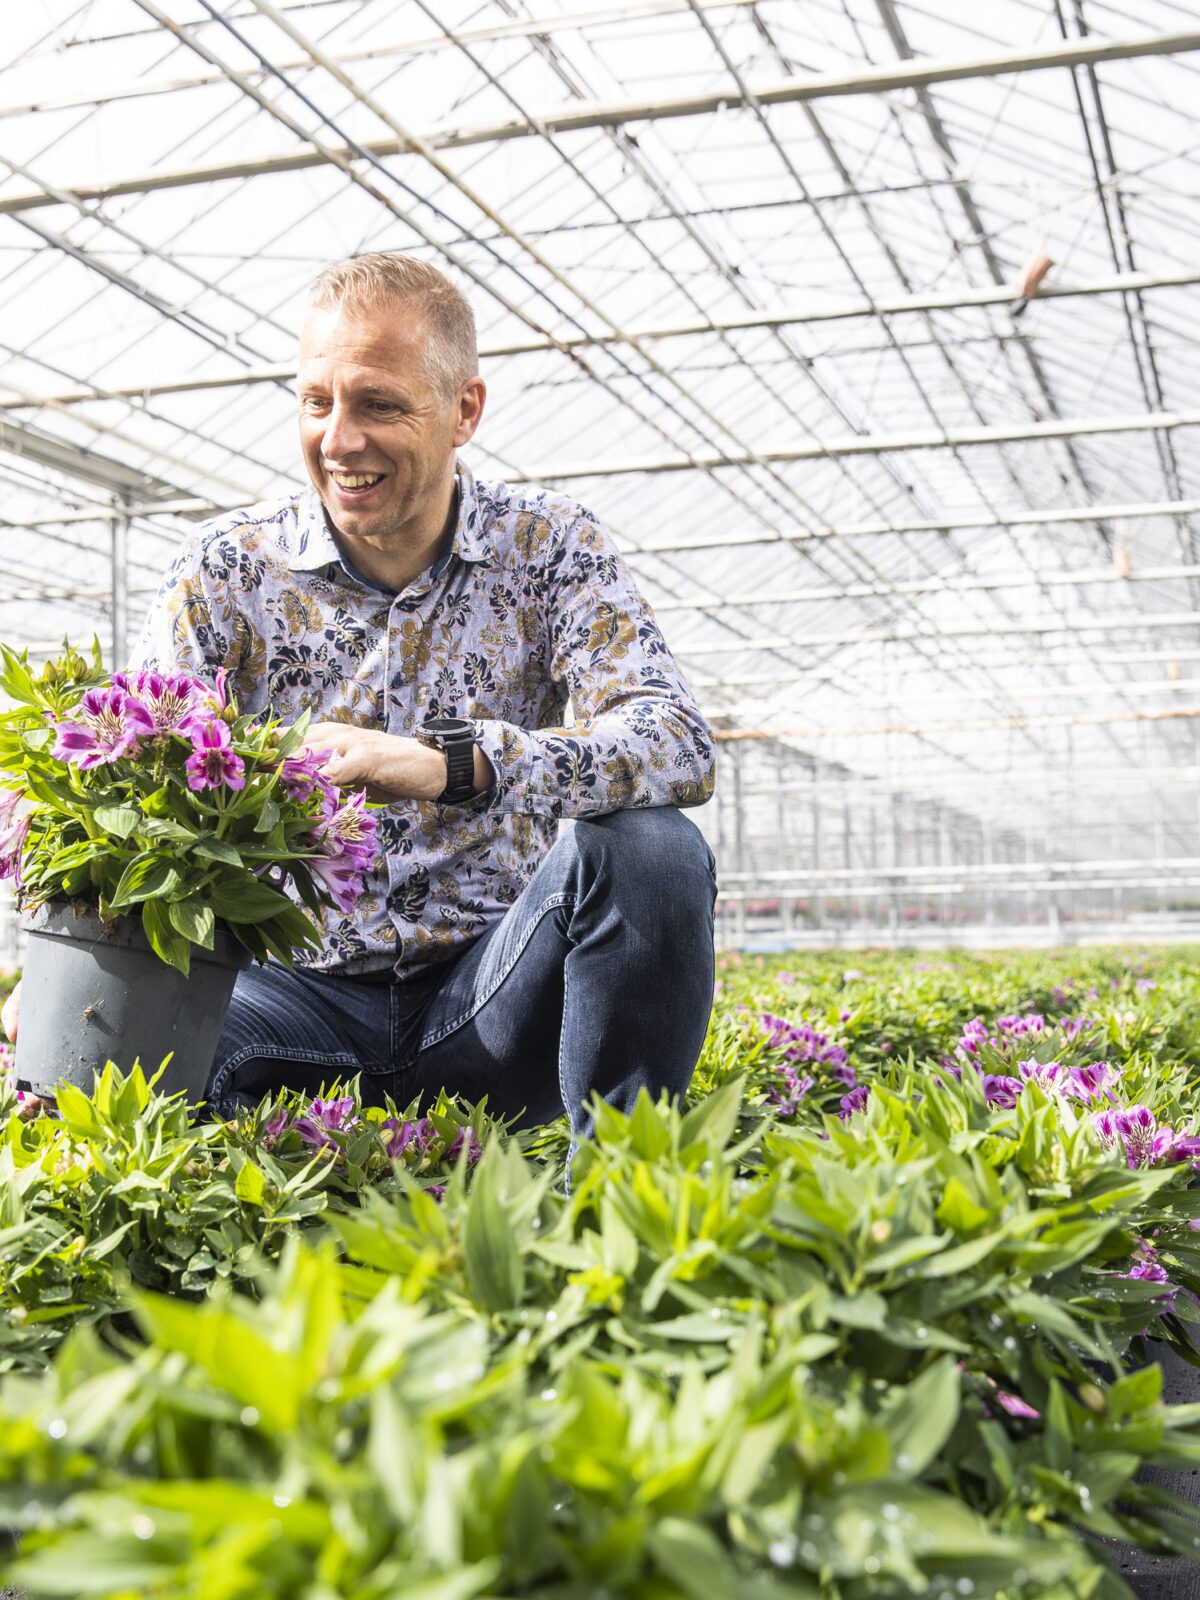 Meet the grower: FN Kempen